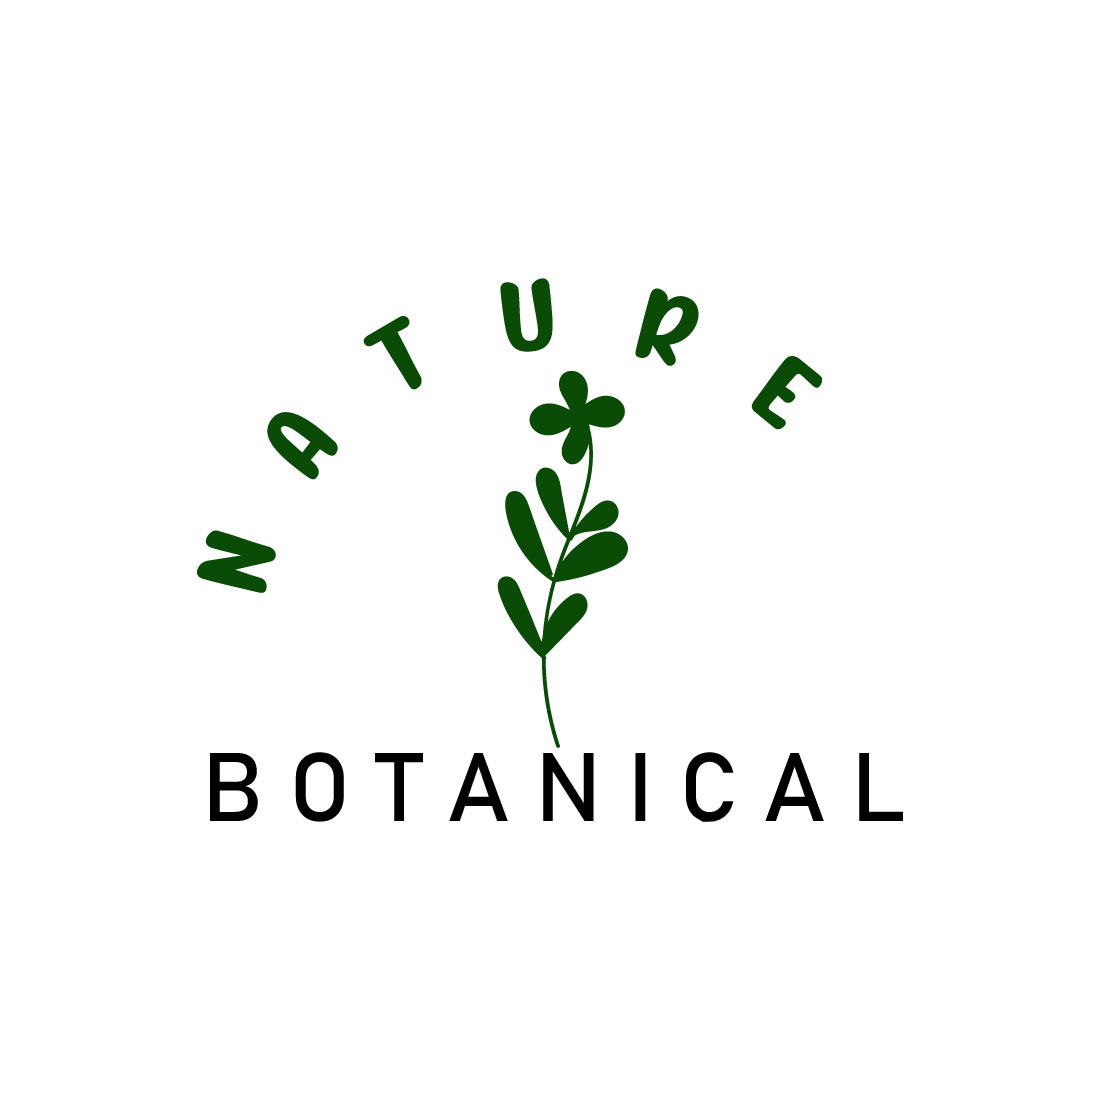 Free botanical flowers logo cover image.